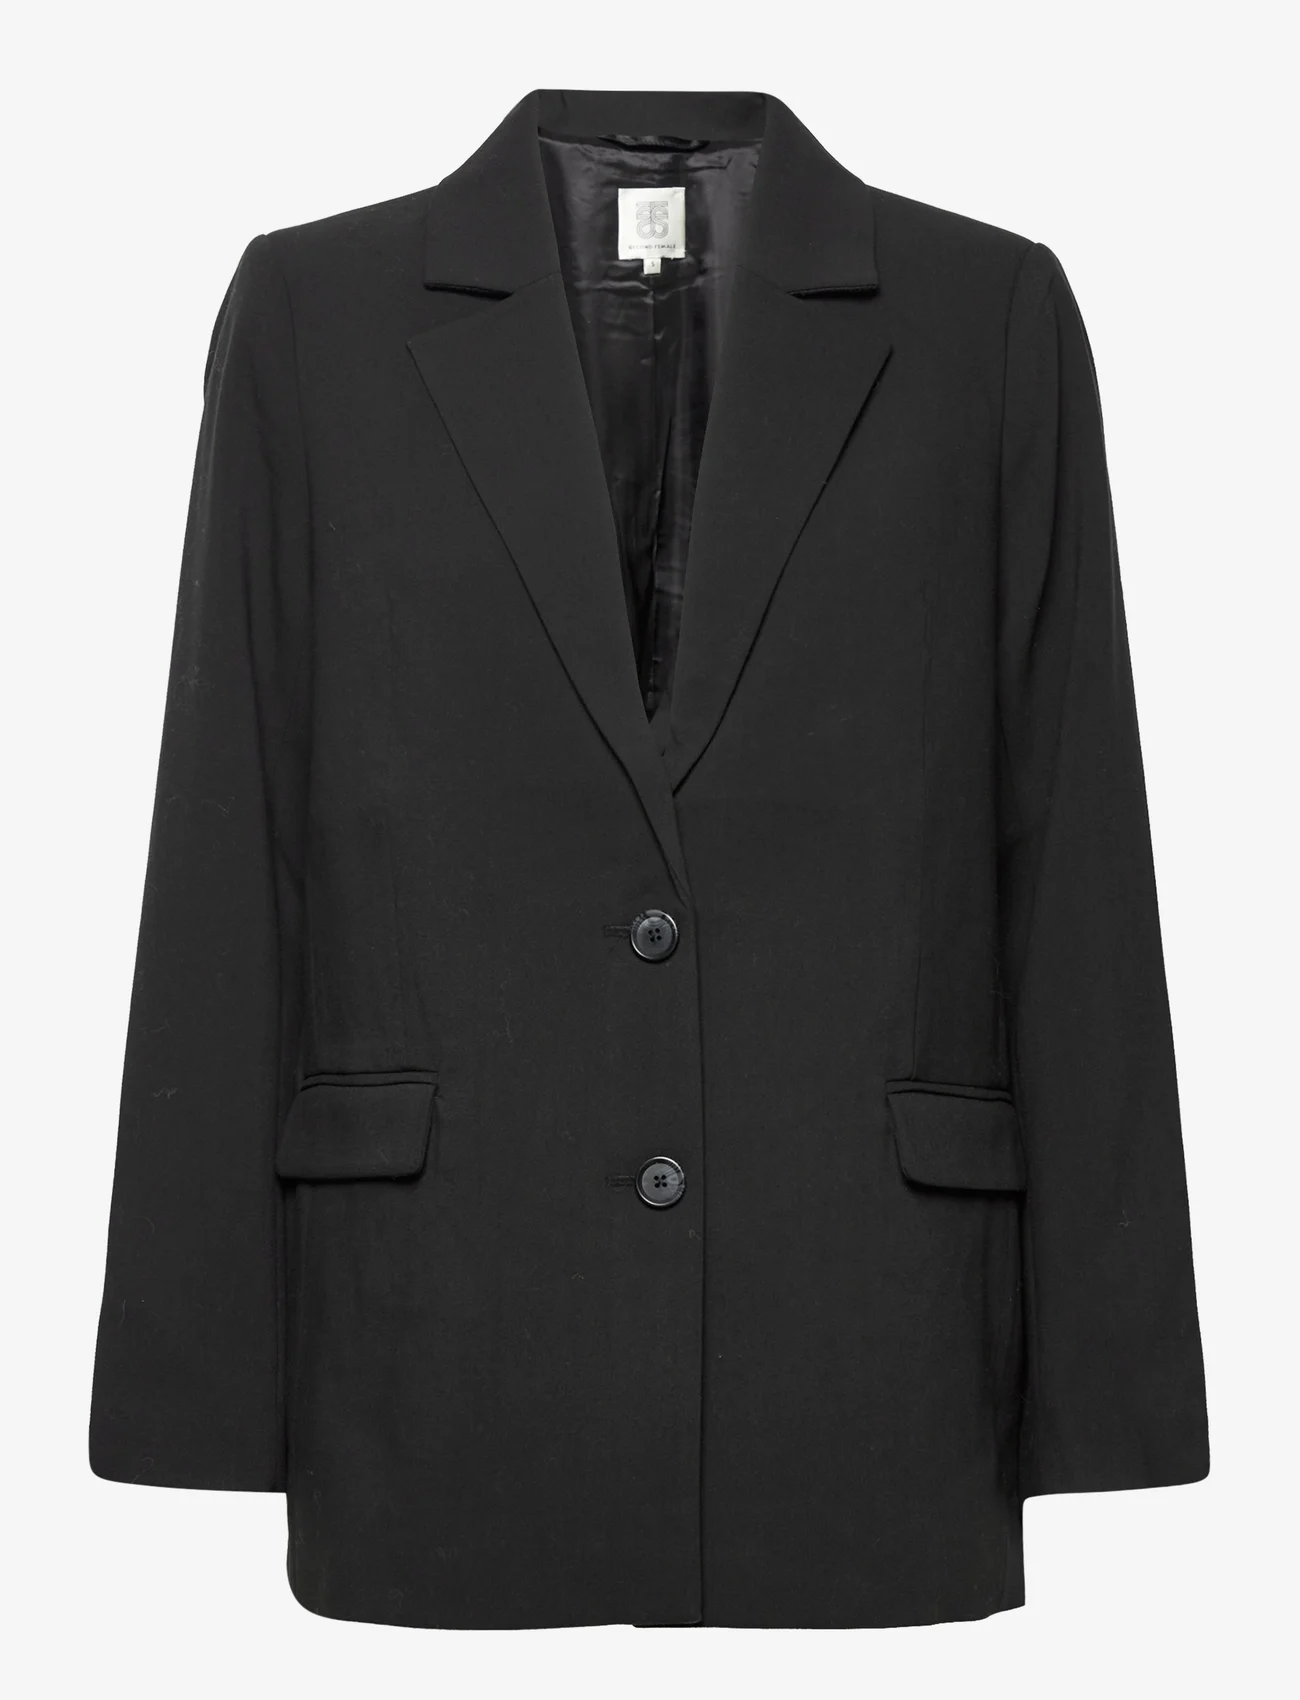 Second Female - Evie Classic Blazer - odzież imprezowa w cenach outletowych - black - 0